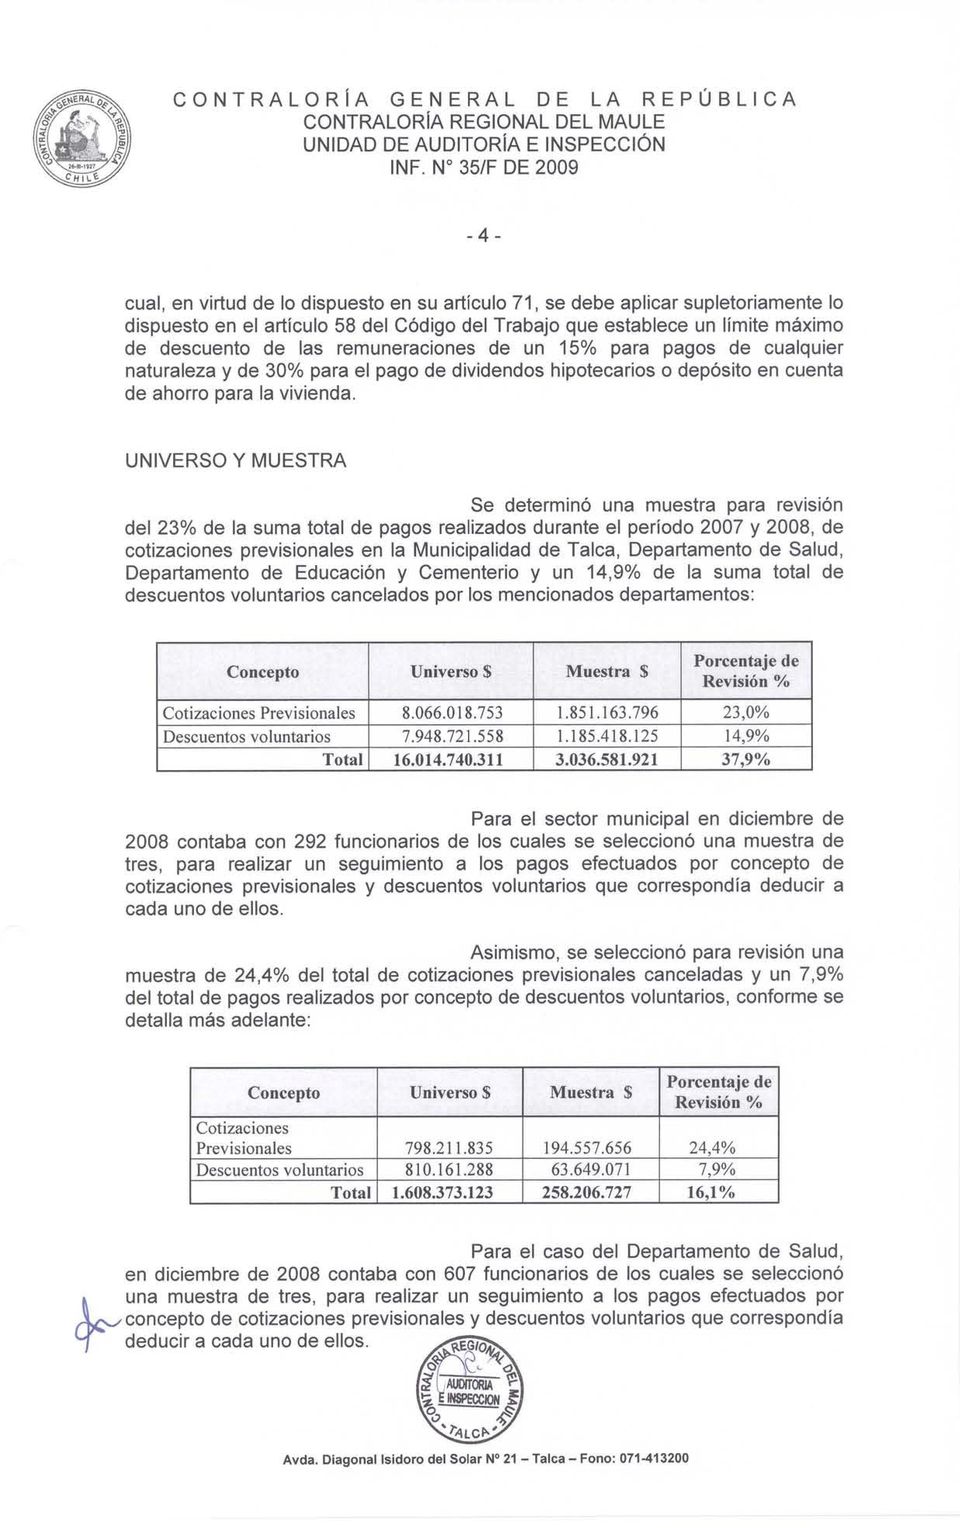 UNIVERSO Y MUESTRA Se determinó una muestra para revisron del 23% de la suma total de pagos realizados durante el período 2007 y 2008, de cotizaciones previsionales en la Municipalidad de Talca,